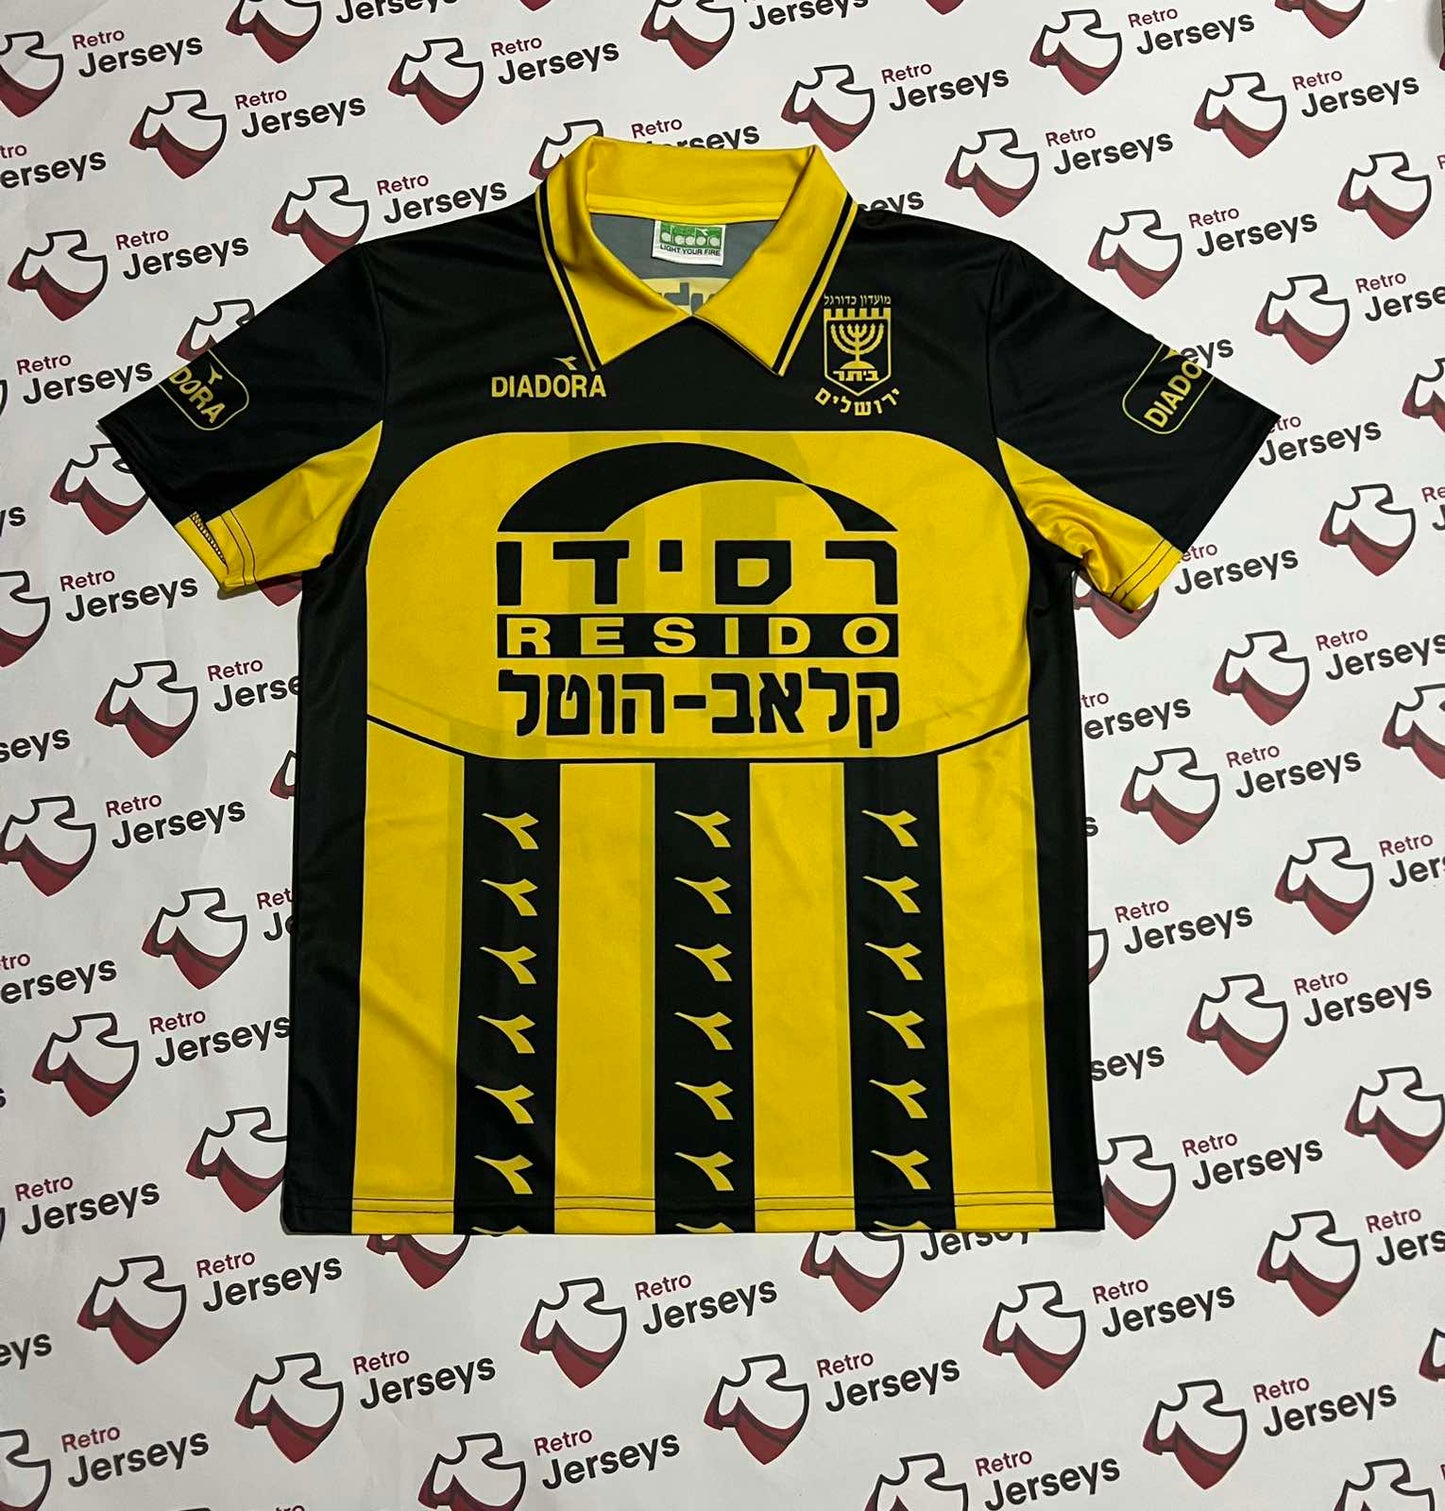 Beitar Jerusalem 1996-1997 Shirt - Retro Jerseys - Retro Jerseys